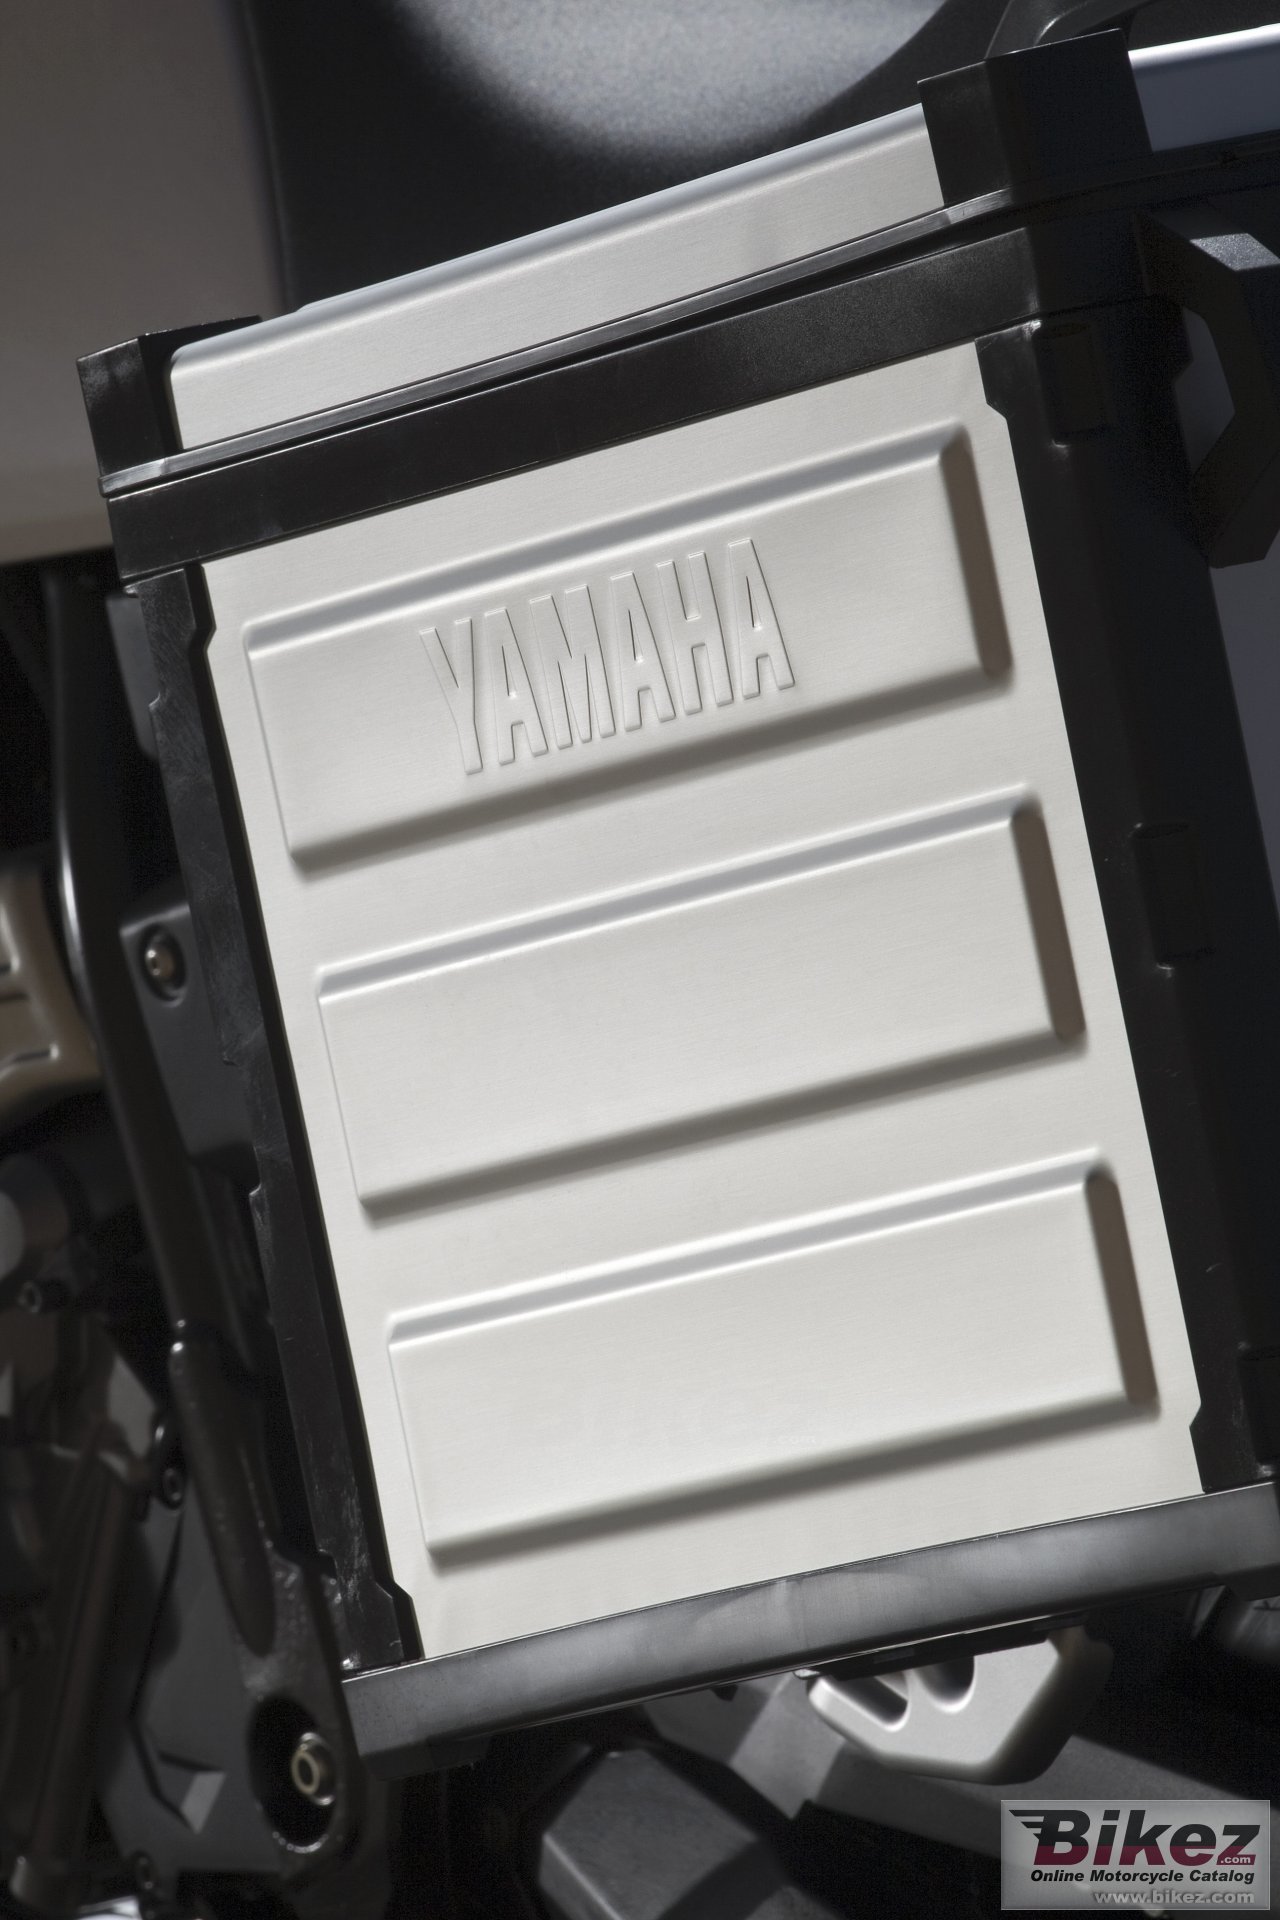 Yamaha XT660Z Tenere